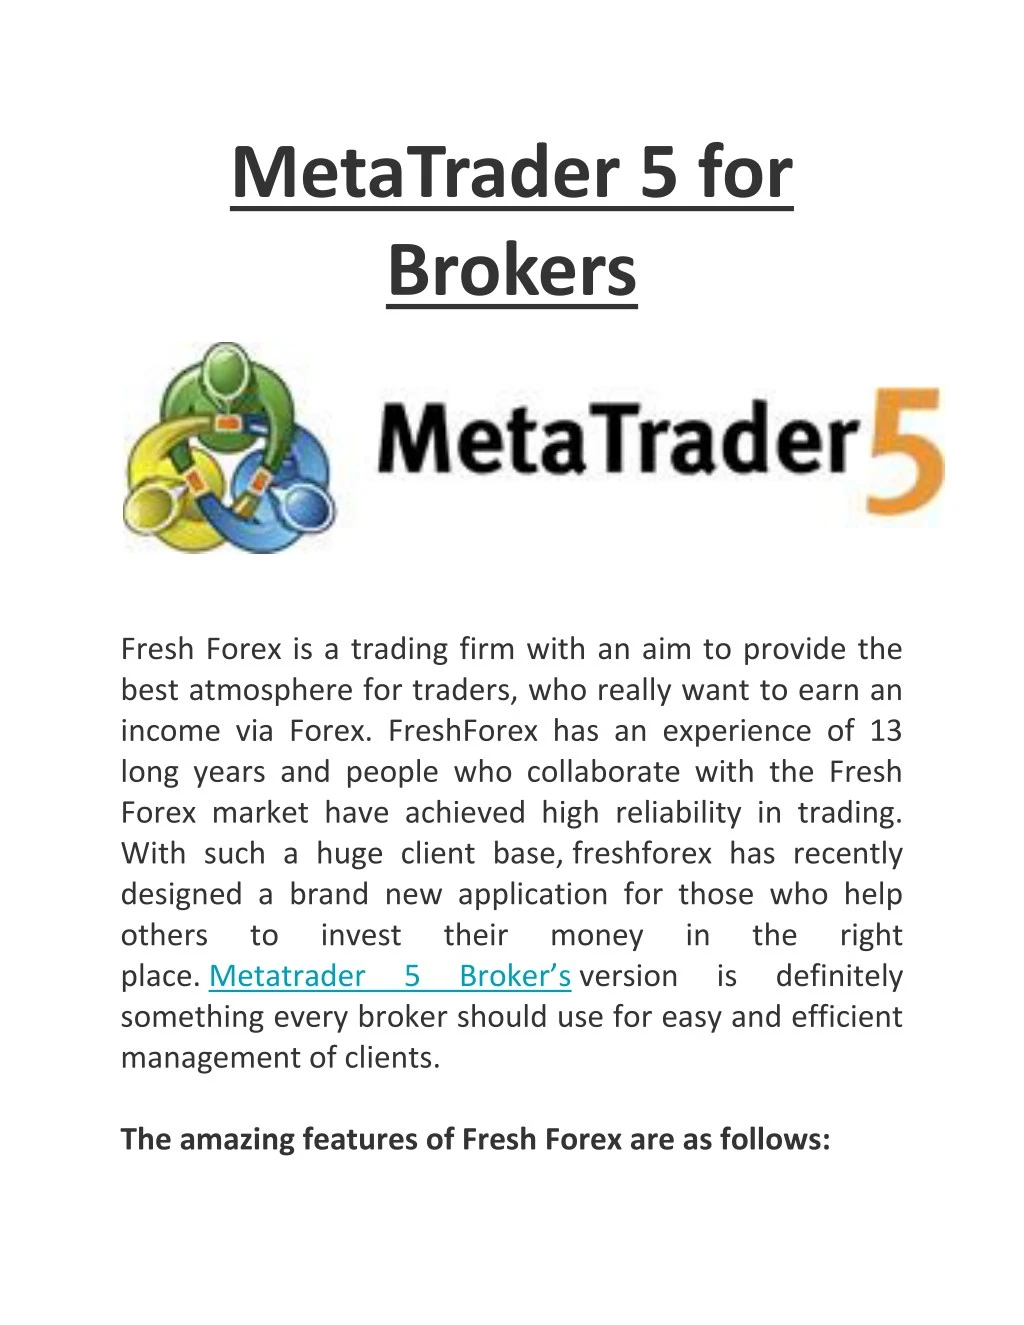 metatrader 5 for brokers